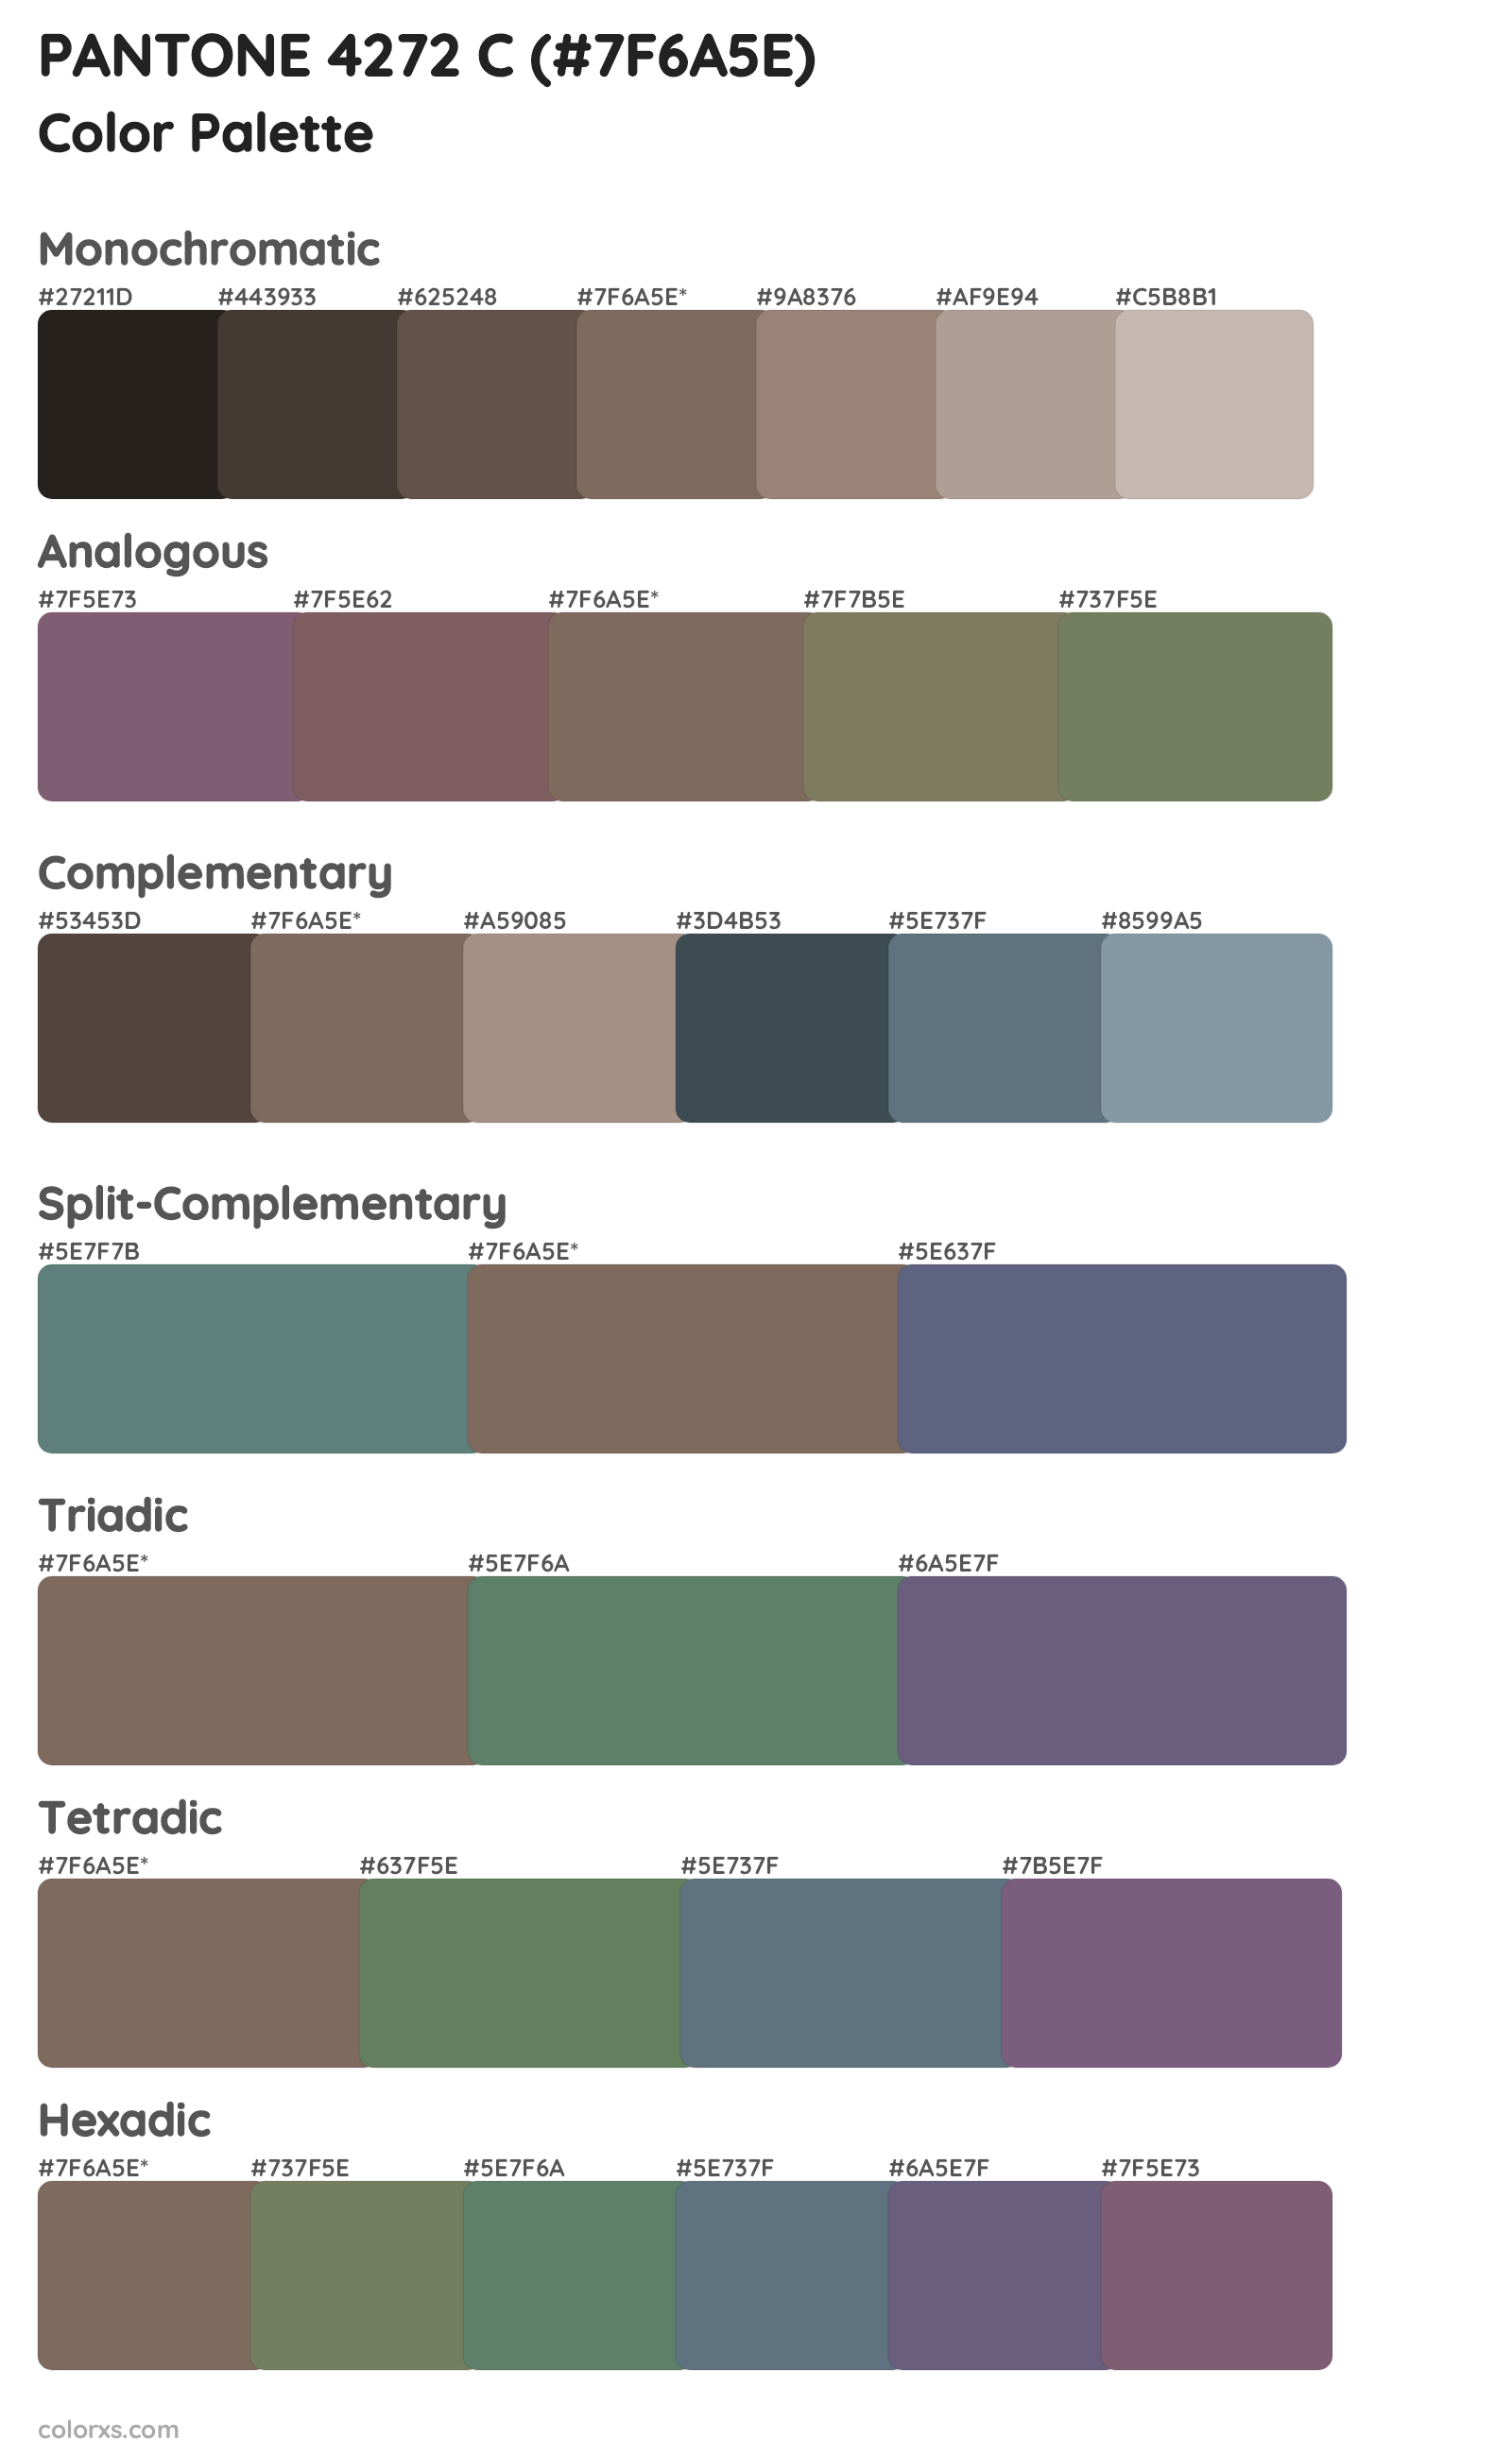 PANTONE 4272 C Color Scheme Palettes